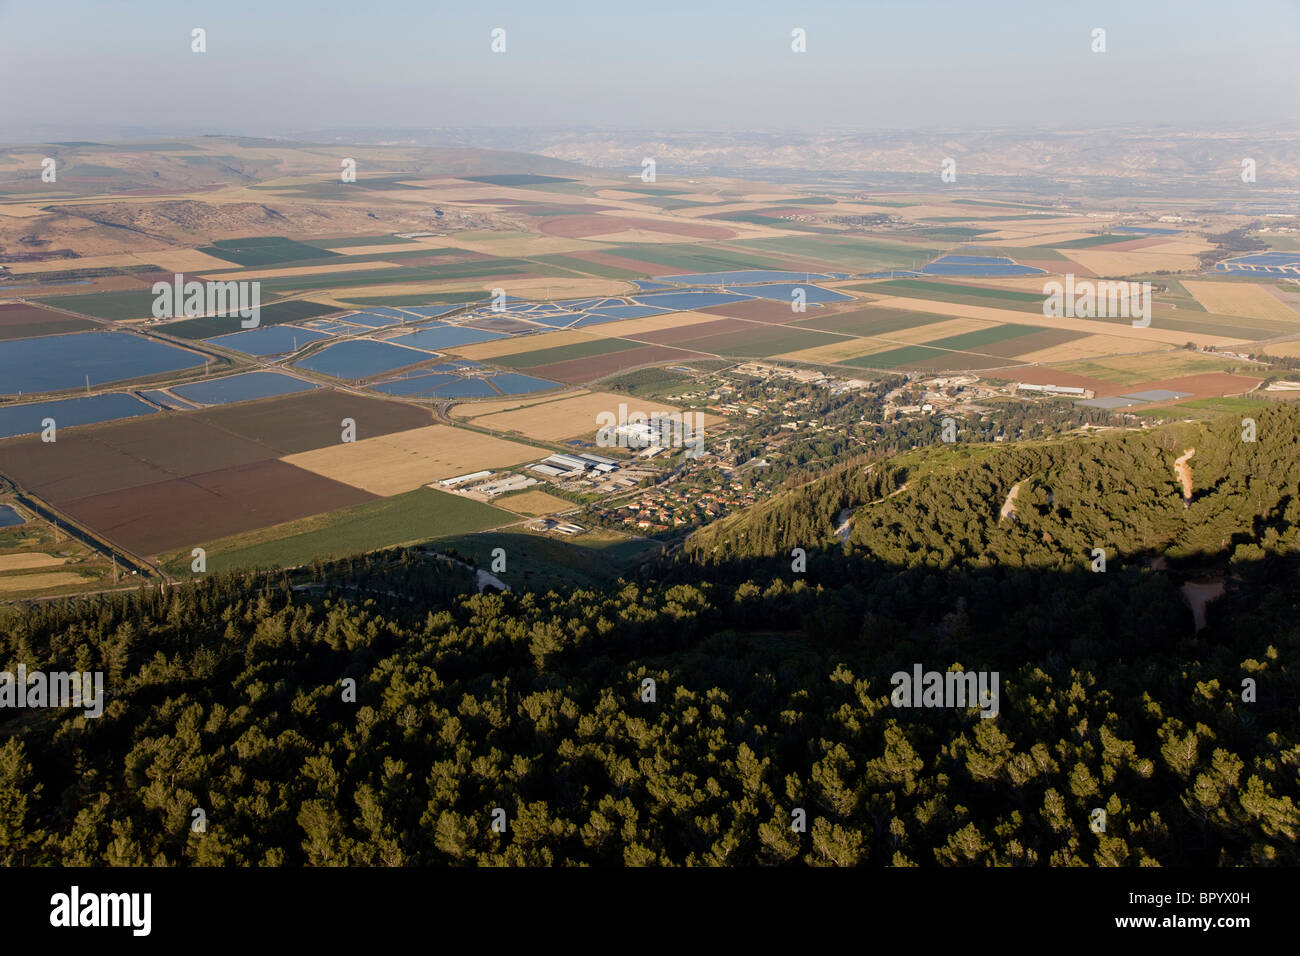 Fotografia aerea dell'agricoltura campi della valle di Jezreel Foto Stock